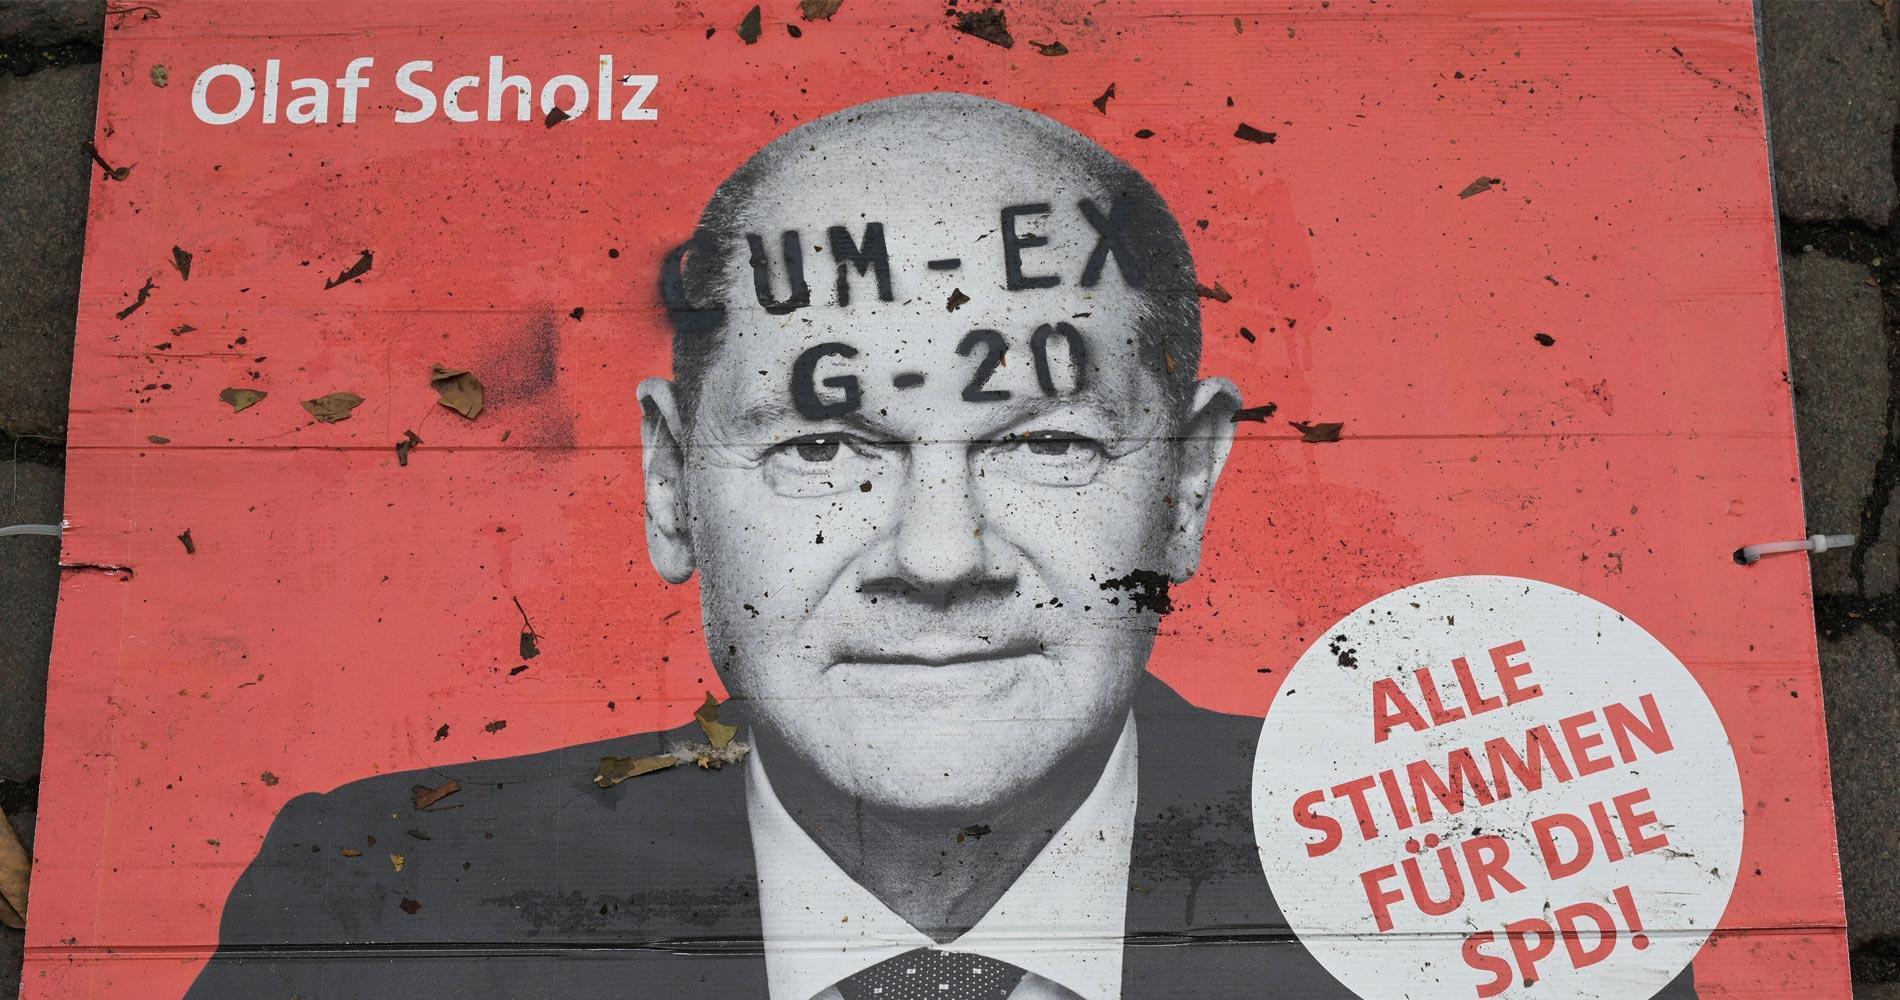 Der CumEx-Skandal und die Verstrickung von Olaf Scholz